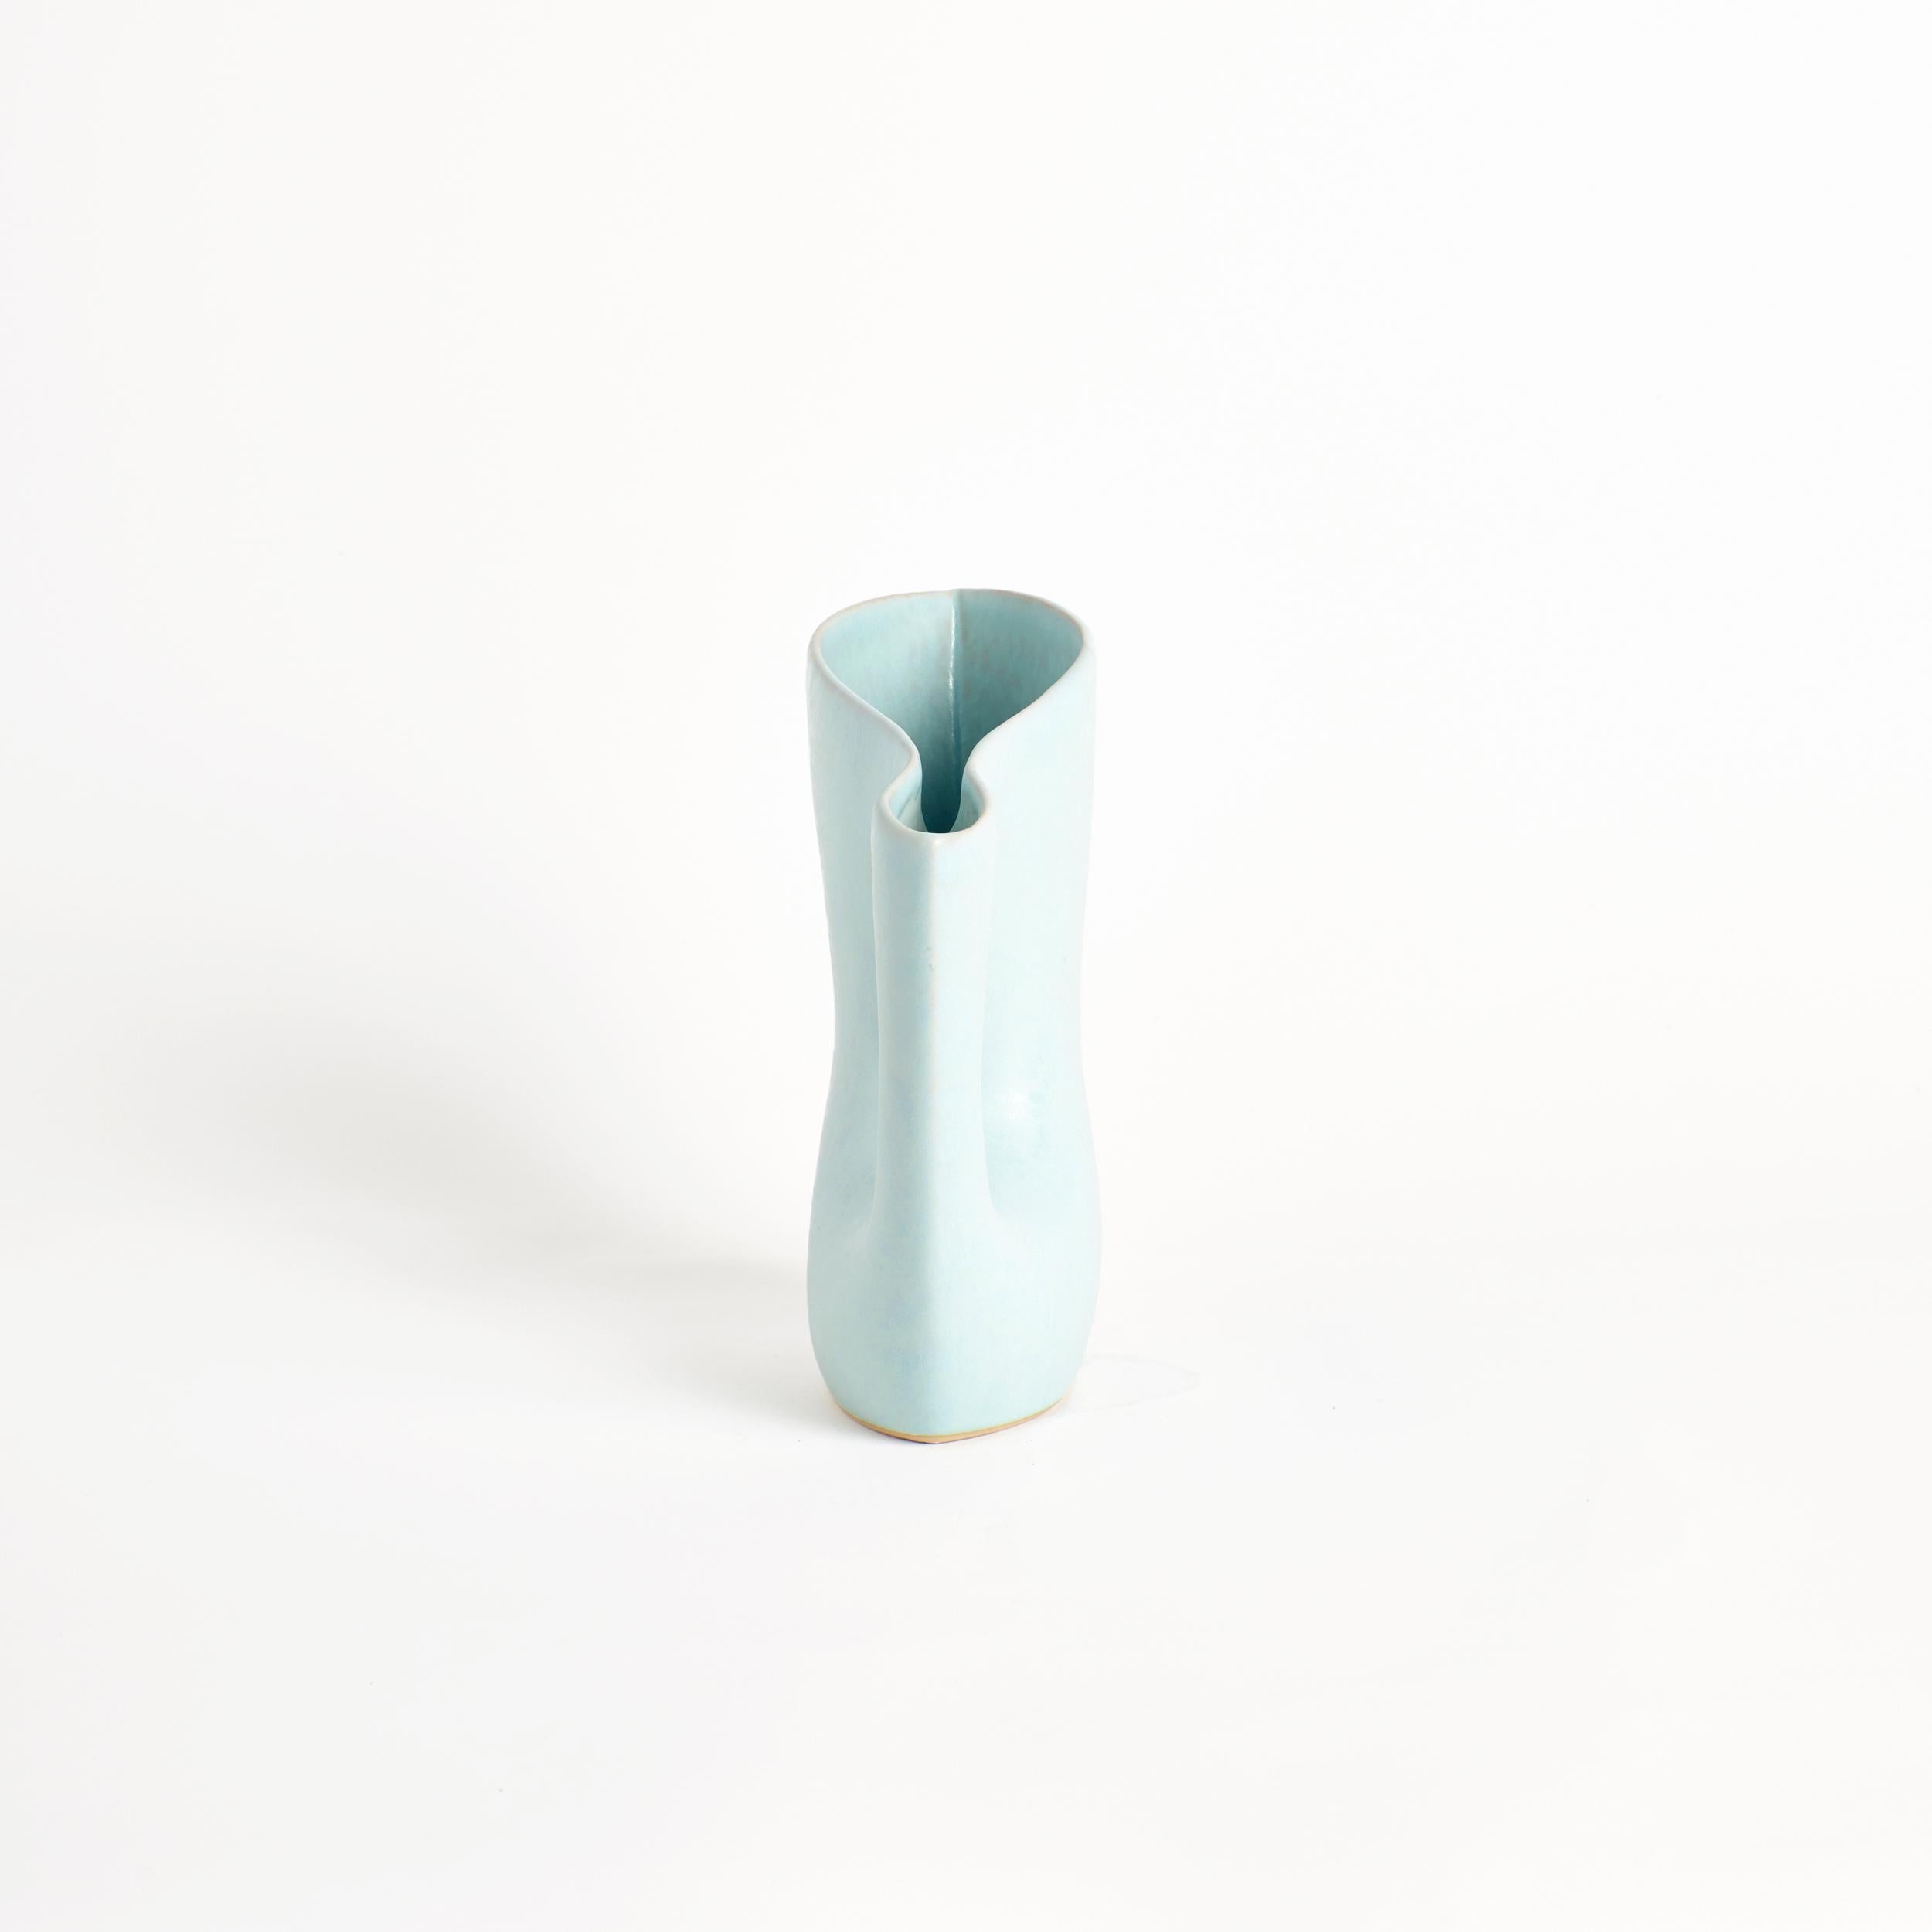 Mamasita Krug in Babyblau
Entworfen von project 213A im Jahr 2021
Handgefertigtes Steingut
Wasserdicht


Dieser elegant geformte Krug hat eine fortgesetzte Öffnung und ist von einer umgefallenen Vase inspiriert. Das Stück soll mit Design und